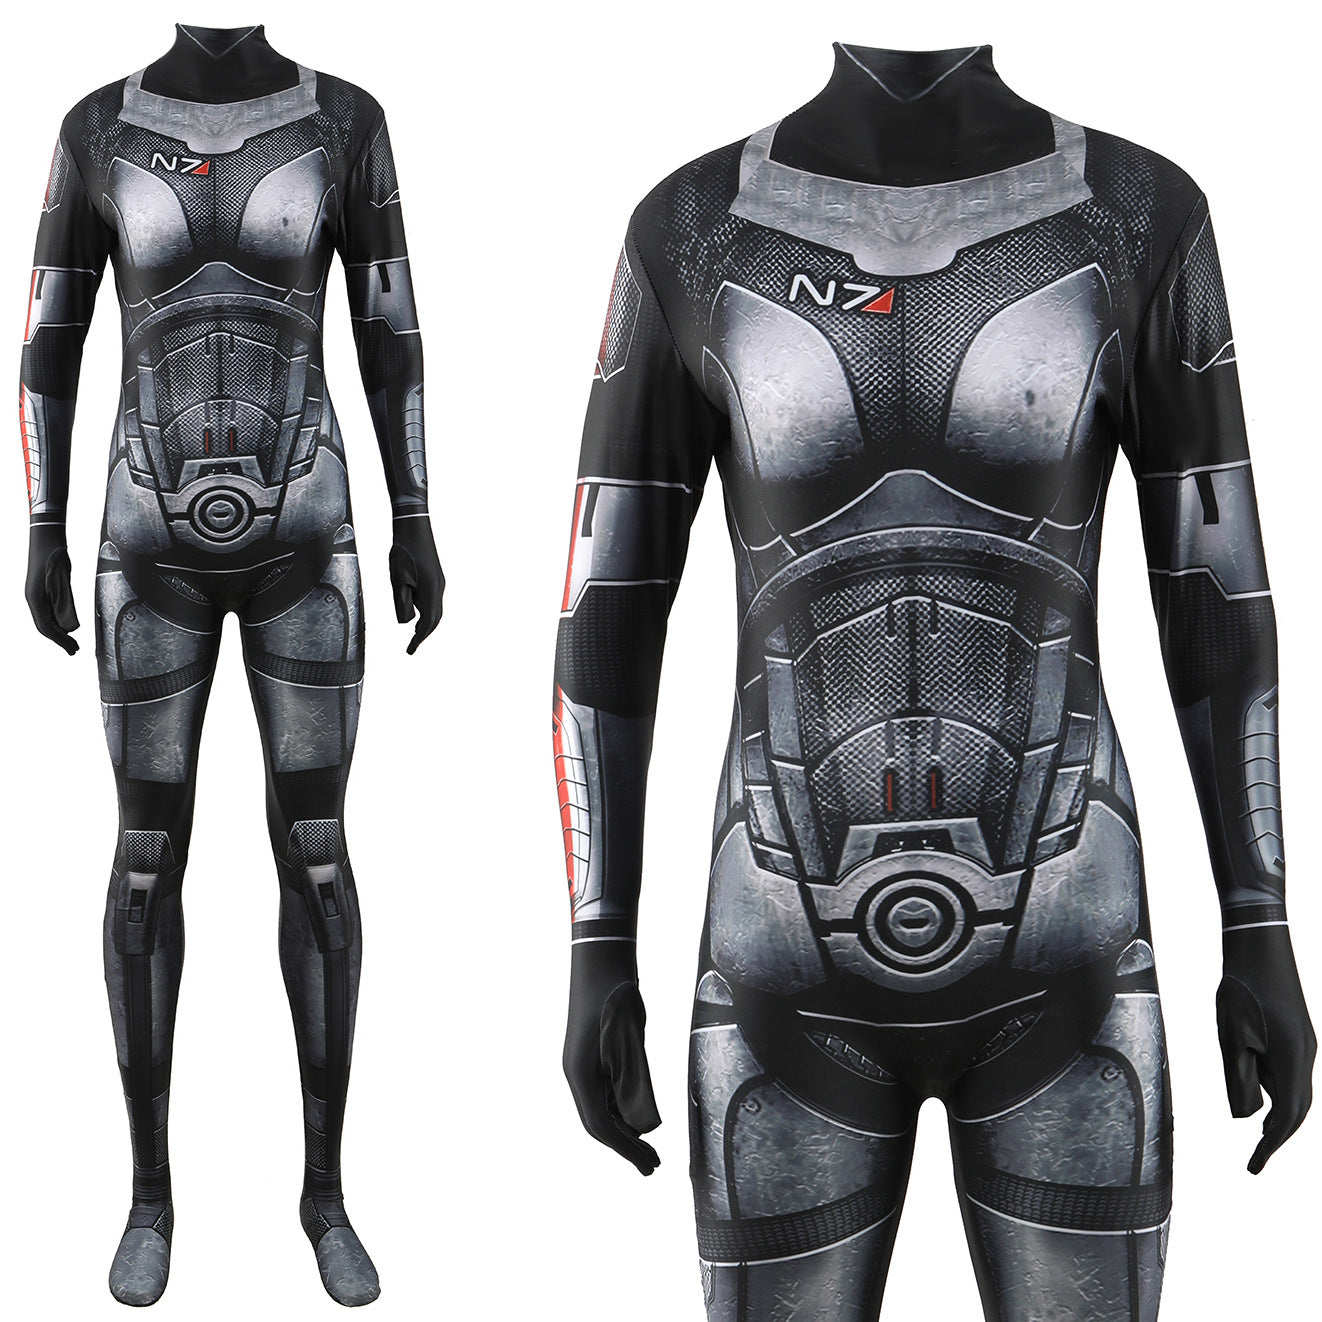 femshep shepard n7 armor jumpsuits cosplay costume kids adult halloween bodysuit